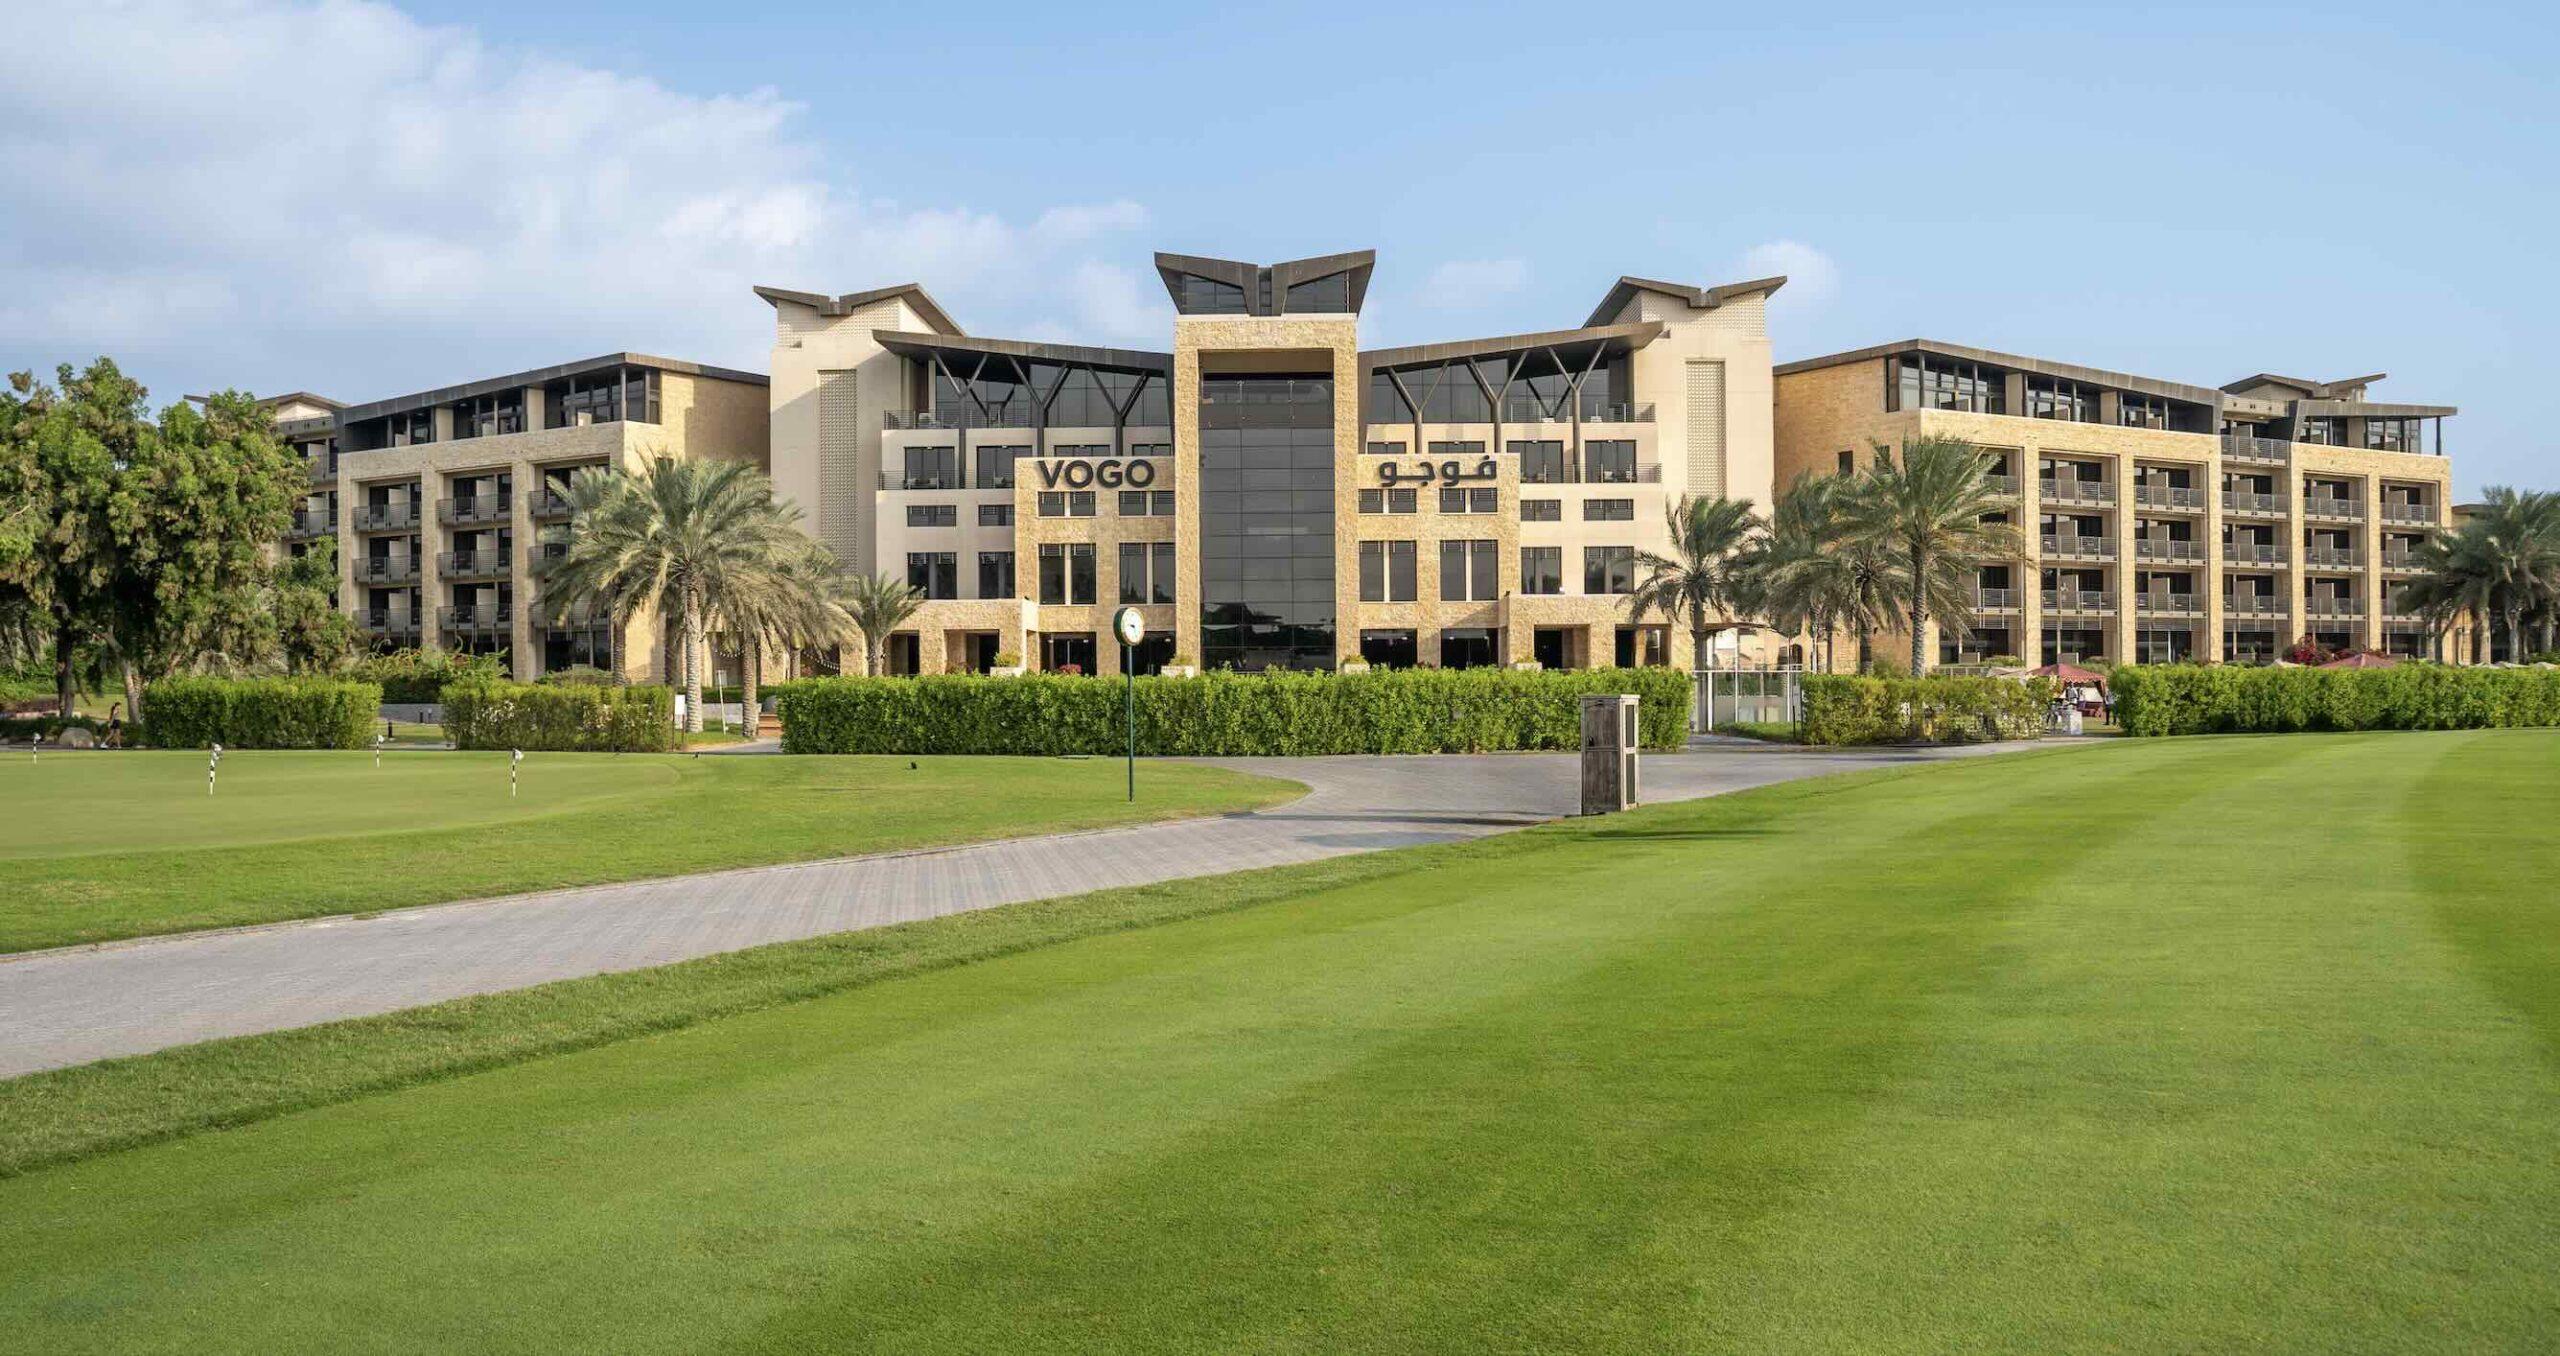 VOGO Abu Dhabi Golf Resort & Spa emerges with a spectacular transformation